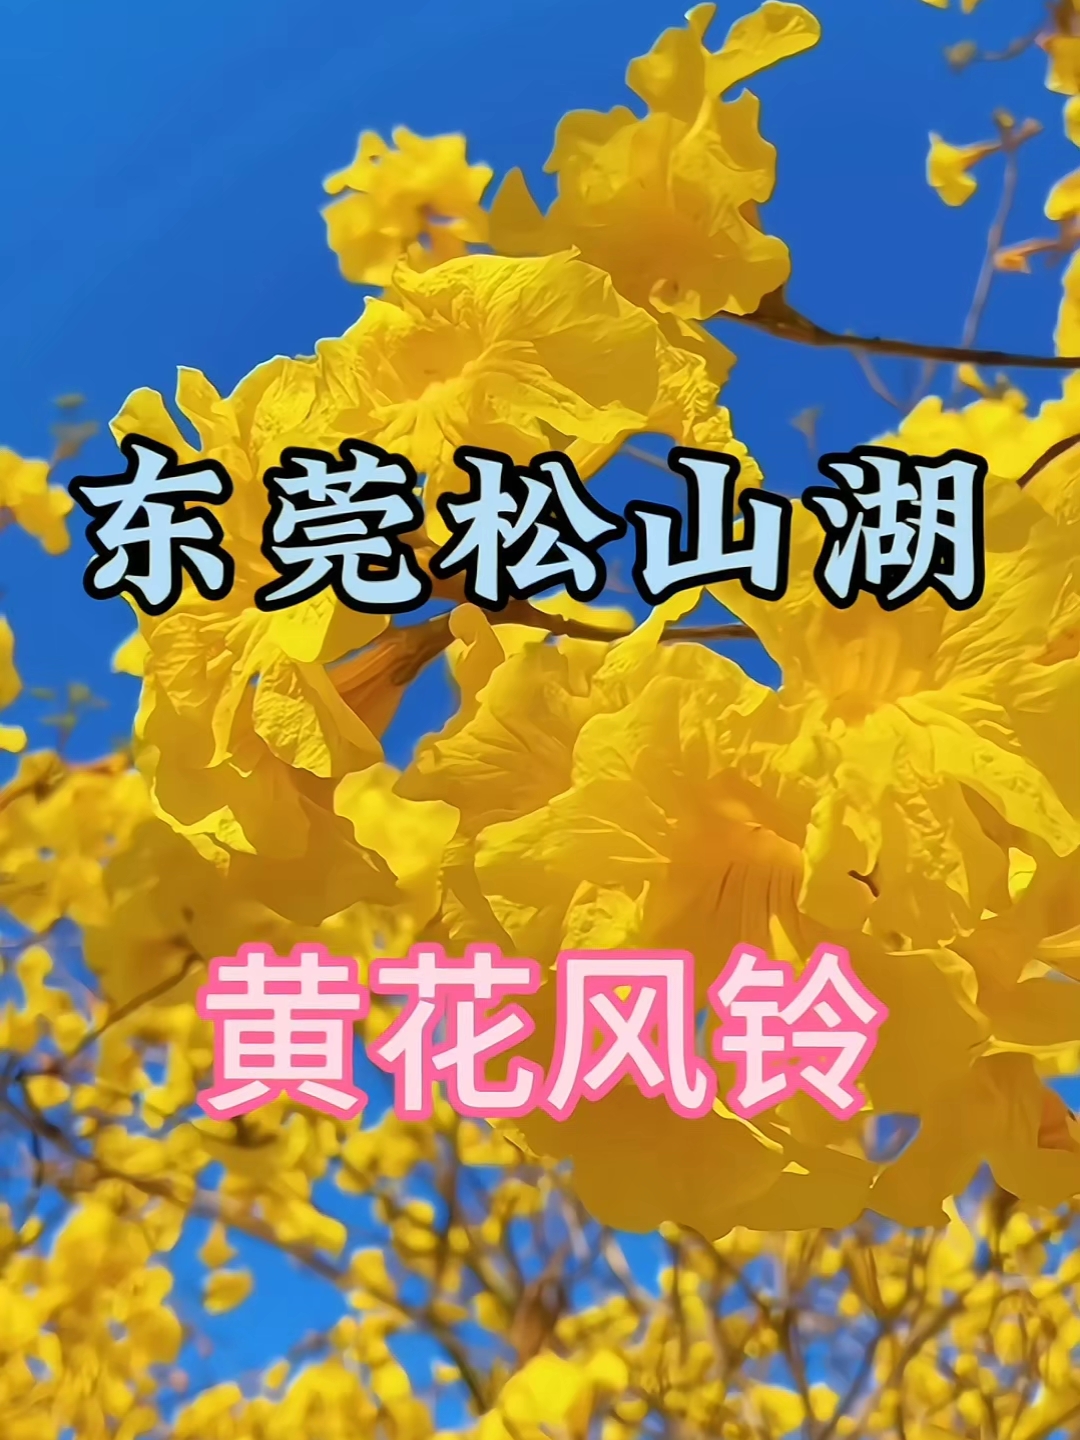 东莞松山湖黄花风铃，迷人金黄花朵，认人流连忘返。